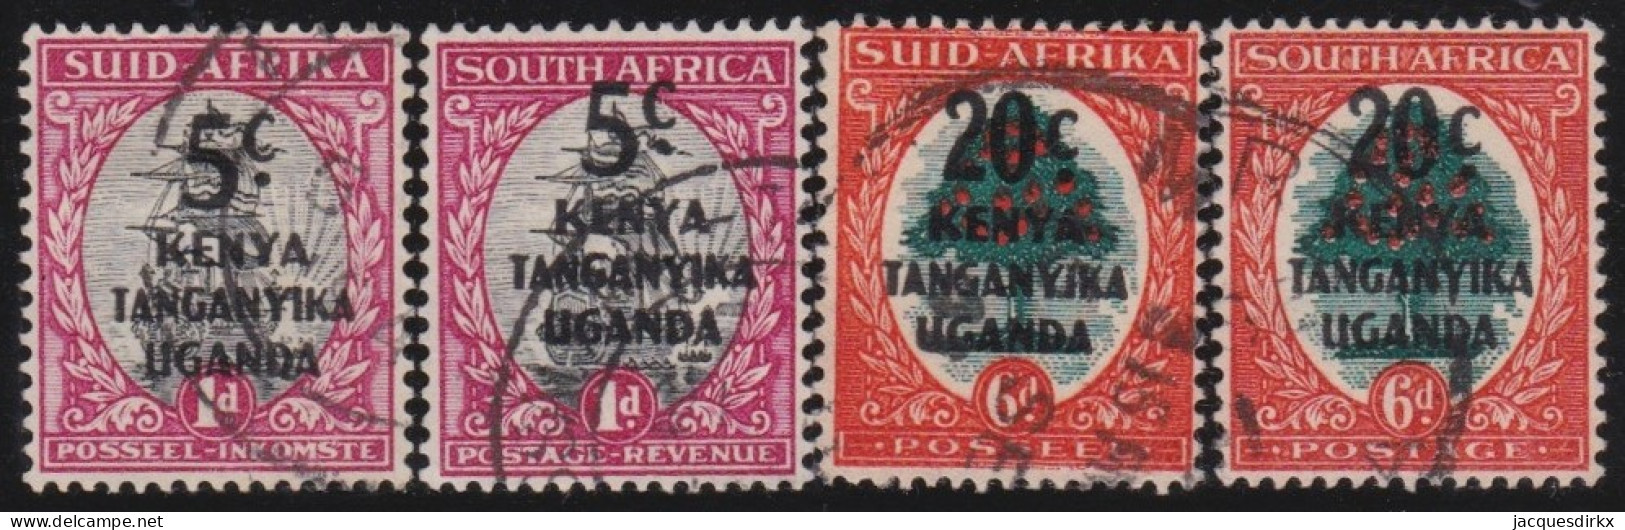 Kenya ,Uganda&Tanganyika     .    SG    .    4 Stamps         .      O        .    Cancelled - Kenya, Uganda & Tanganyika